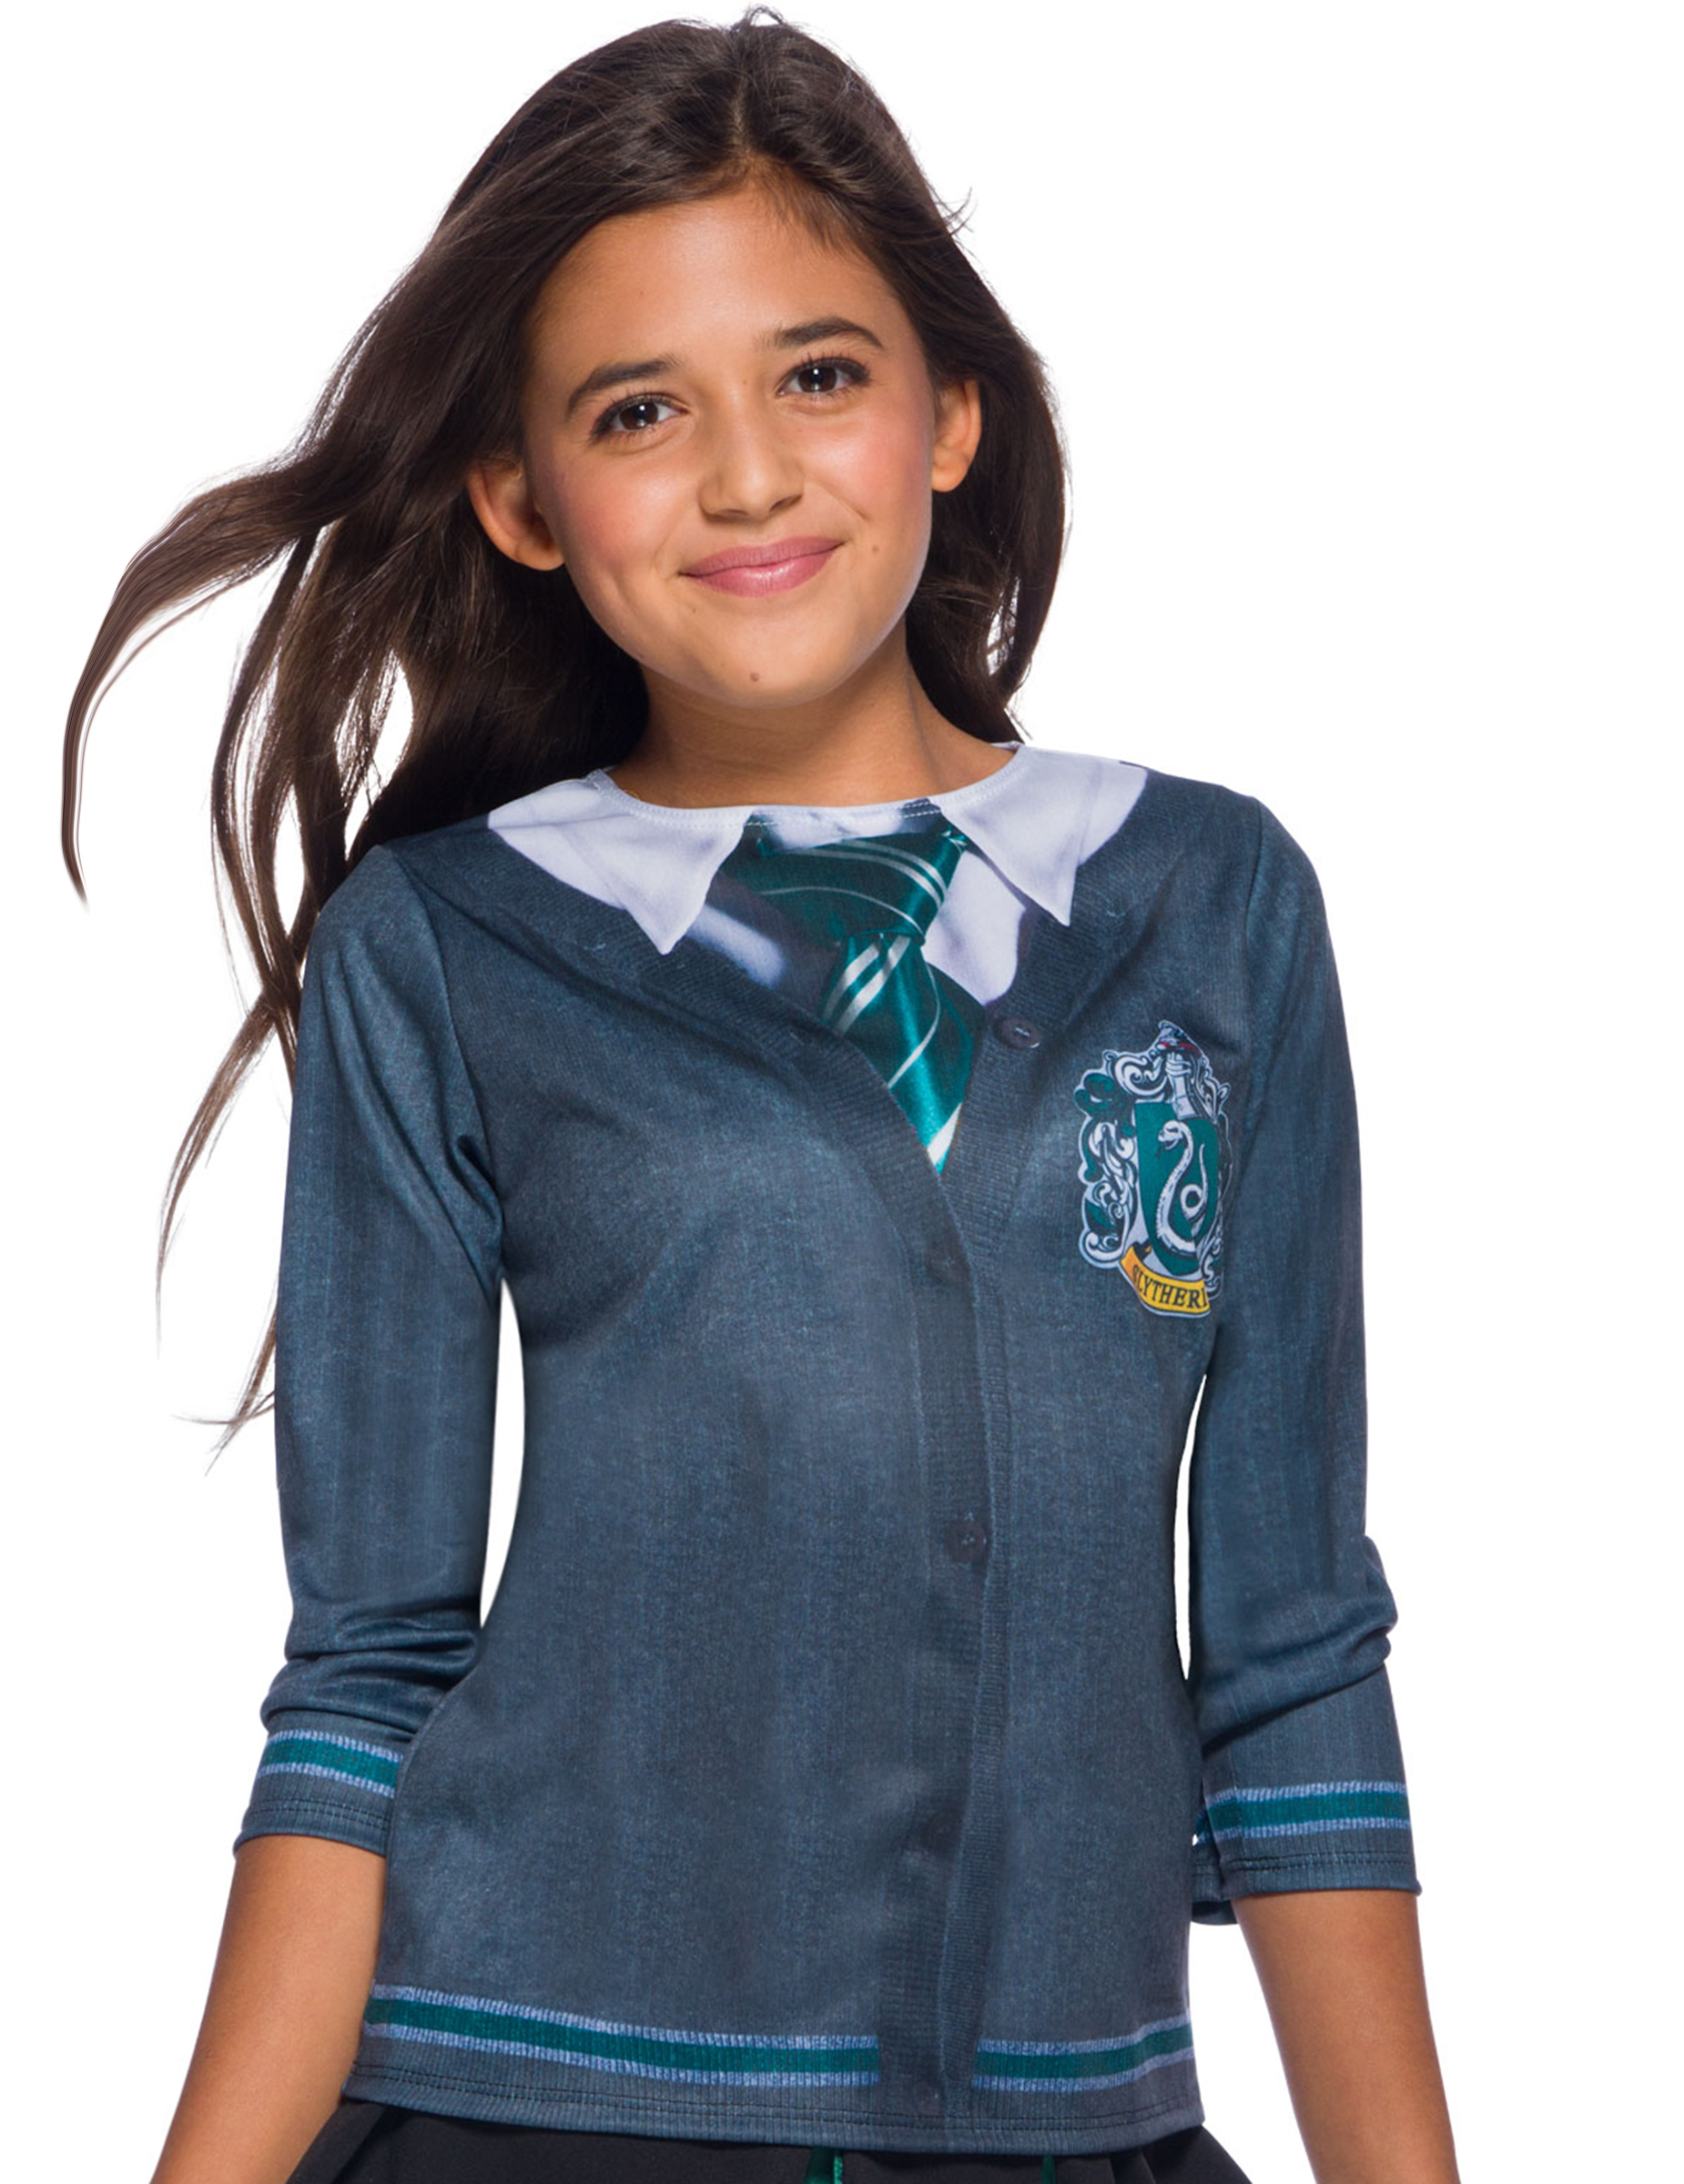 Slytherin-Schuluniform für Kinder Harry Potter grau-grün-weiß von RUBIES FRANCE